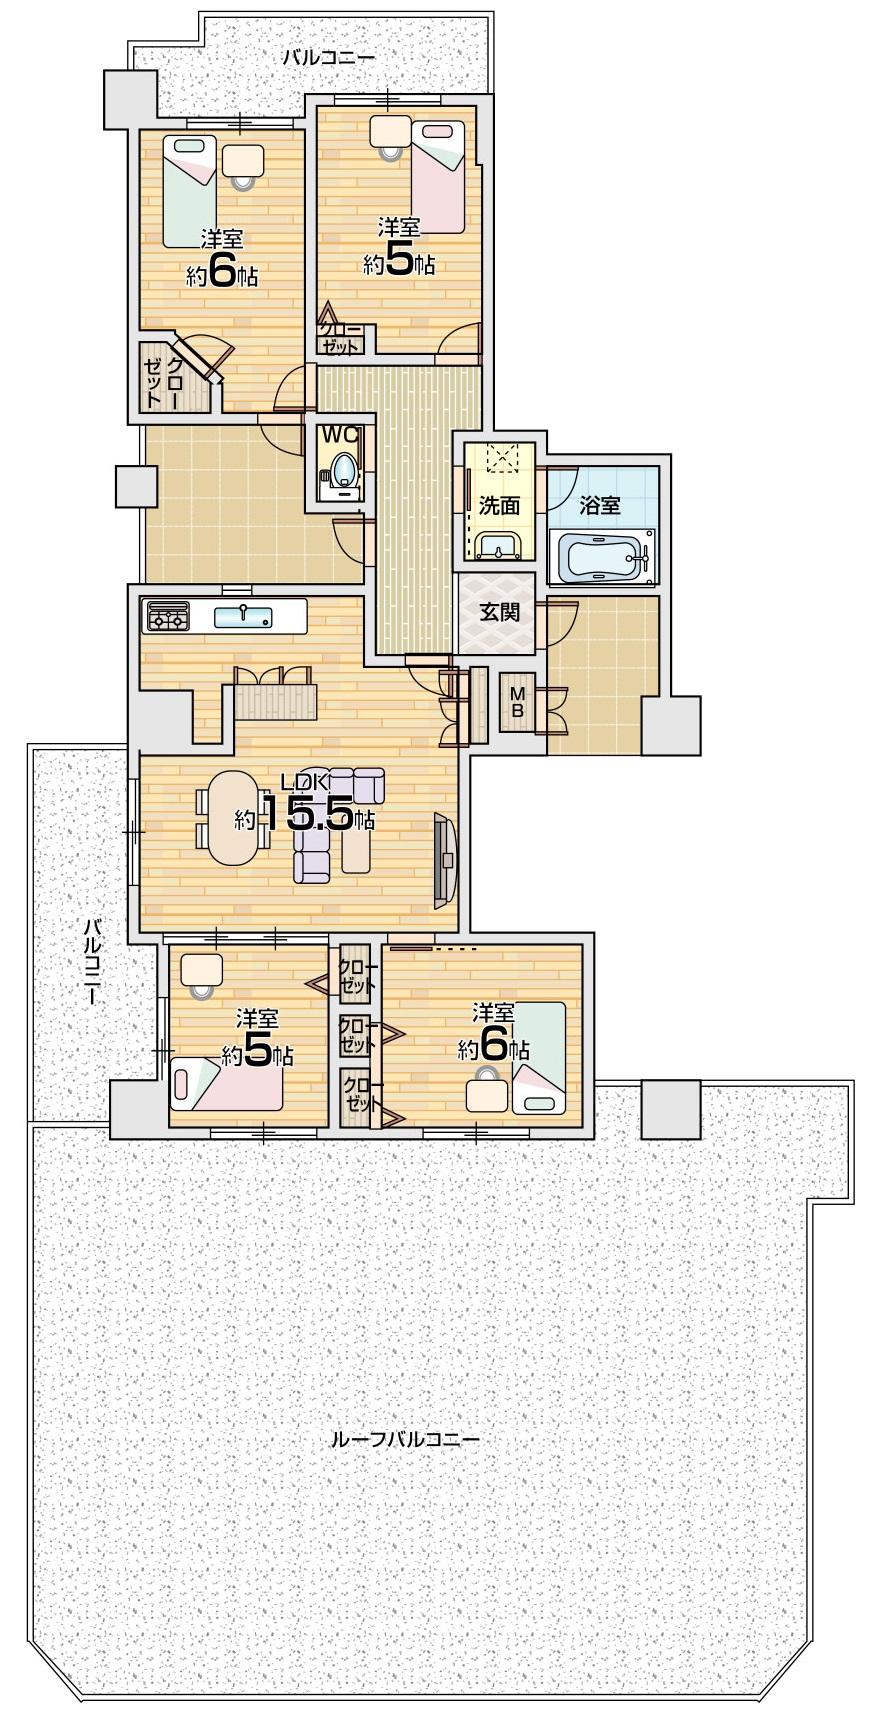 Floor plan. 4LDK, Price 37,800,000 yen, Occupied area 82.89 sq m , Balcony area 17.91 sq m floor plan